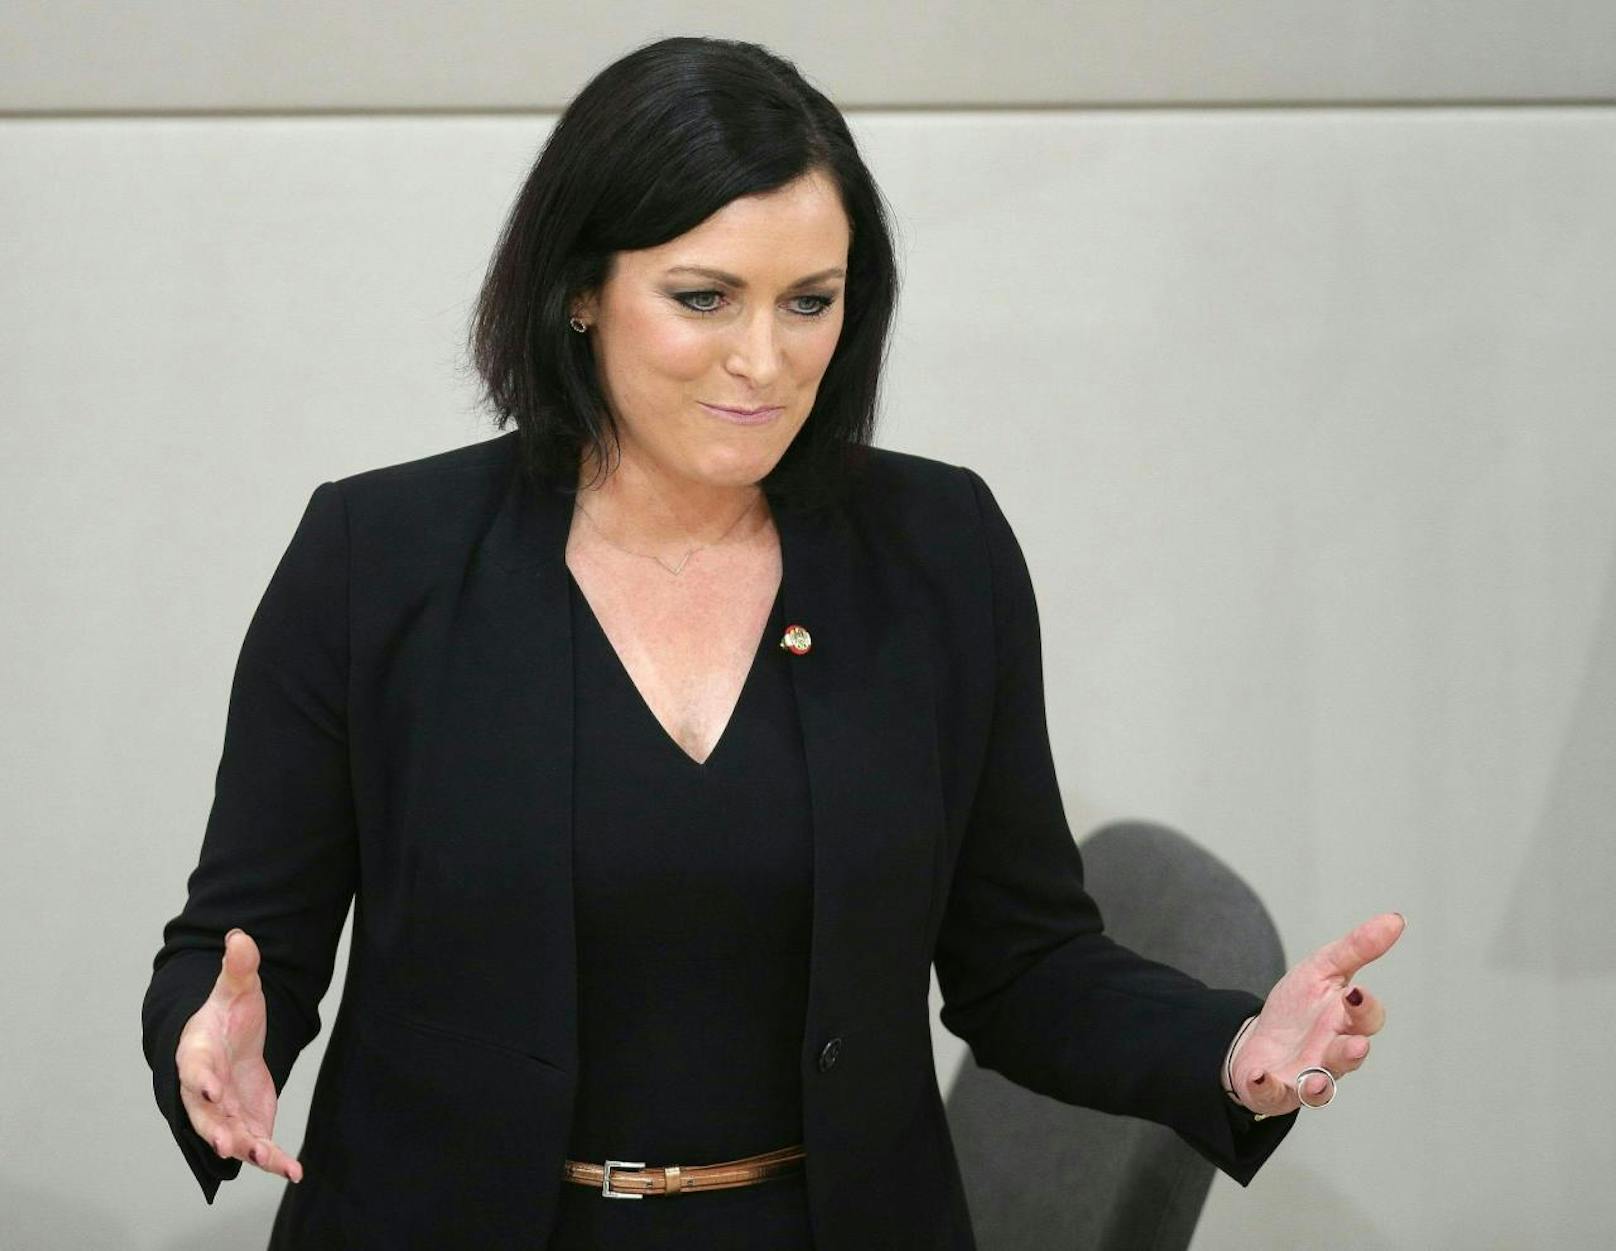 Für die neuen 1. Nationalratspräsidentin Elisabeth Köstinger gab es viel Gegenwind